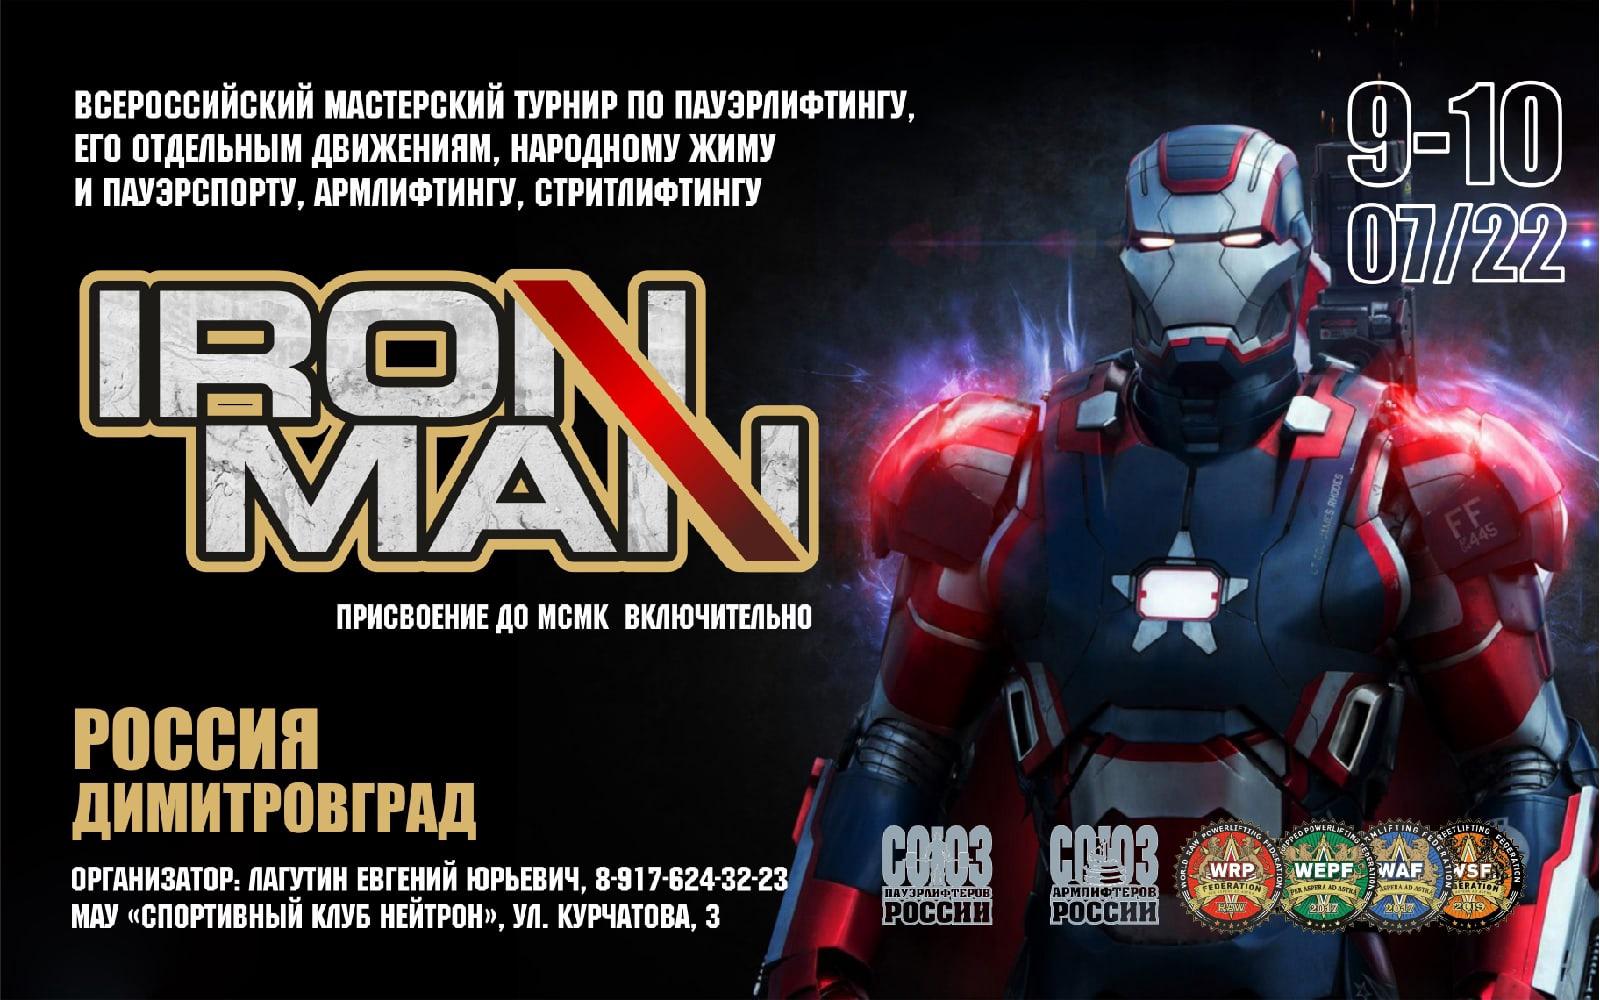 Всероссийский мастерский турнир "Ironman 2022" по пауэрлифтингу, народному жиму, пауэрспорту, армлифтингу и стритлифтингу 